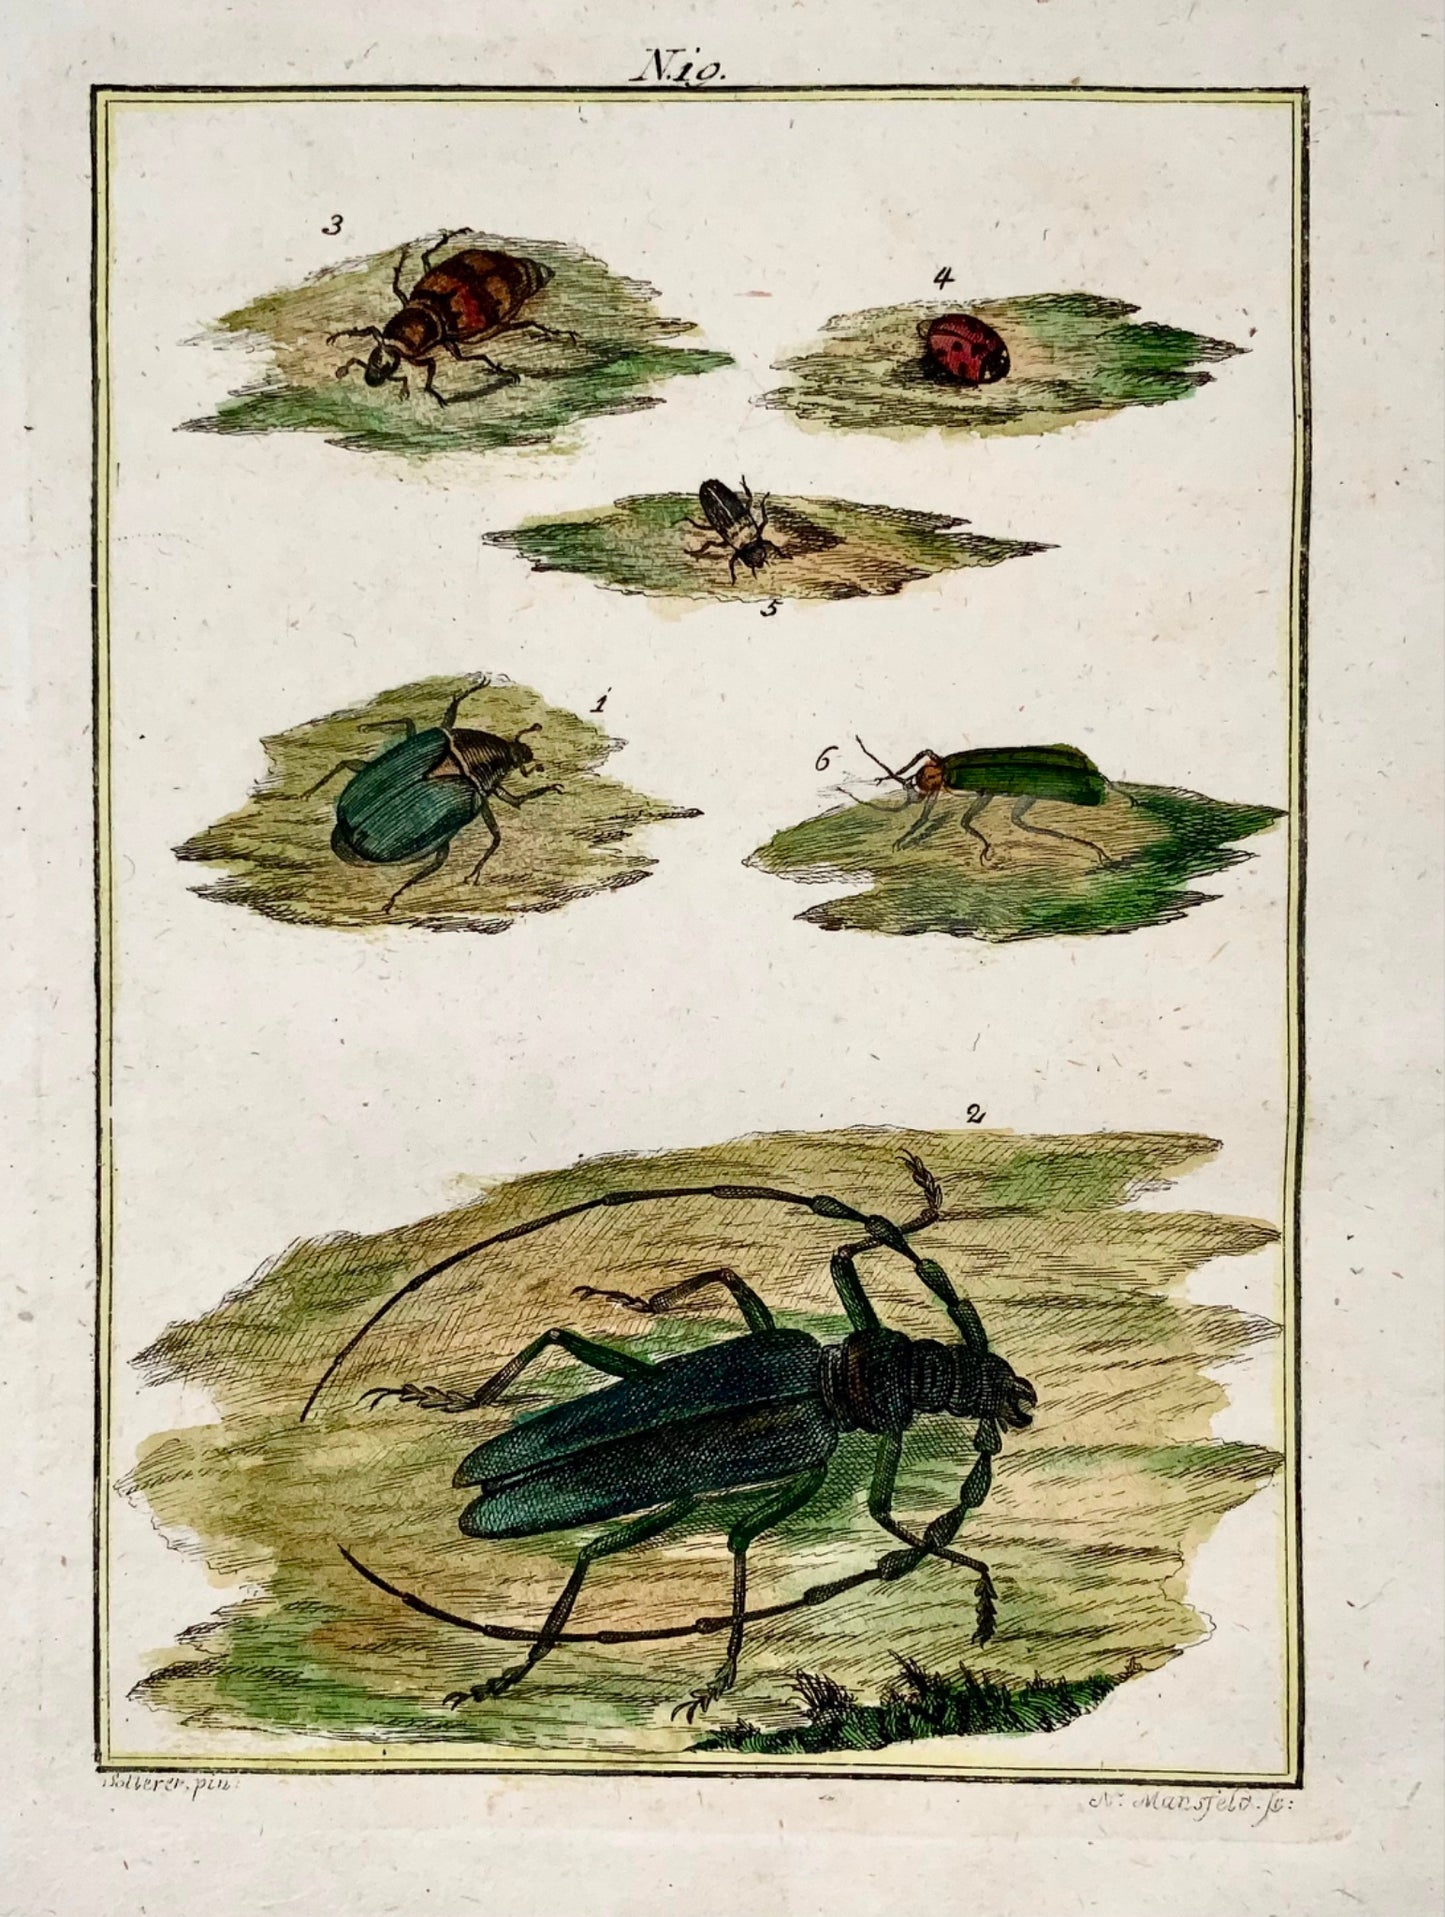 1790 Coleotteri, insetti, Joh. Incisione colorata a mano di Sollerer